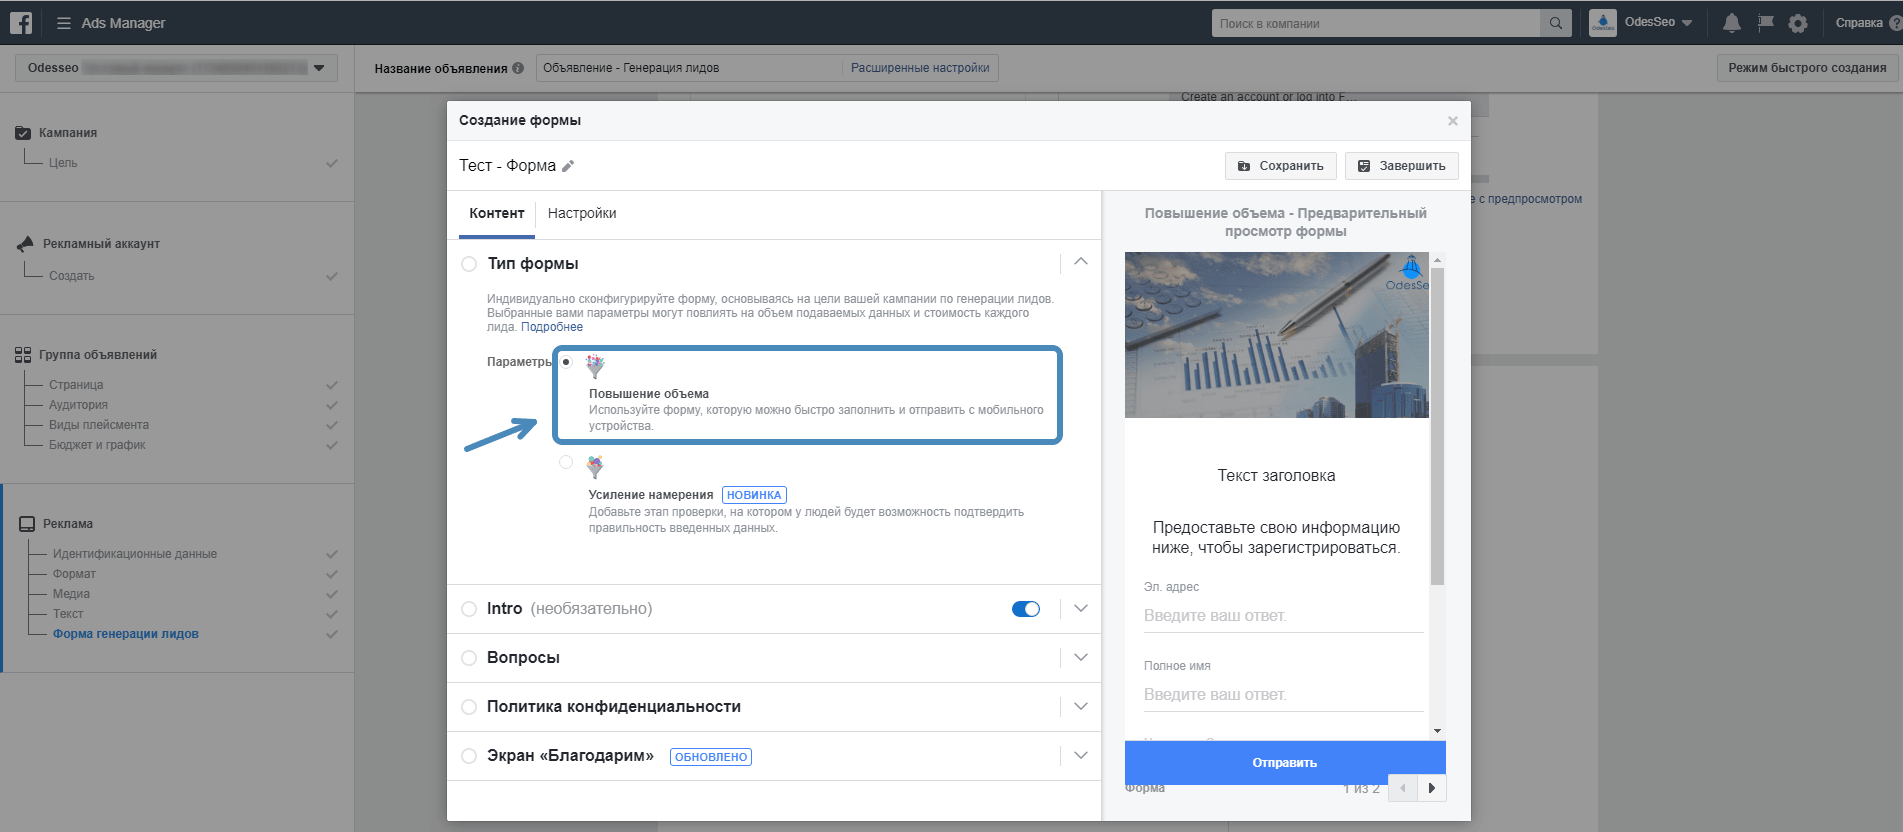 Лидогенерация в Facebook*: как собрать базу подписчиков через Lead Ads